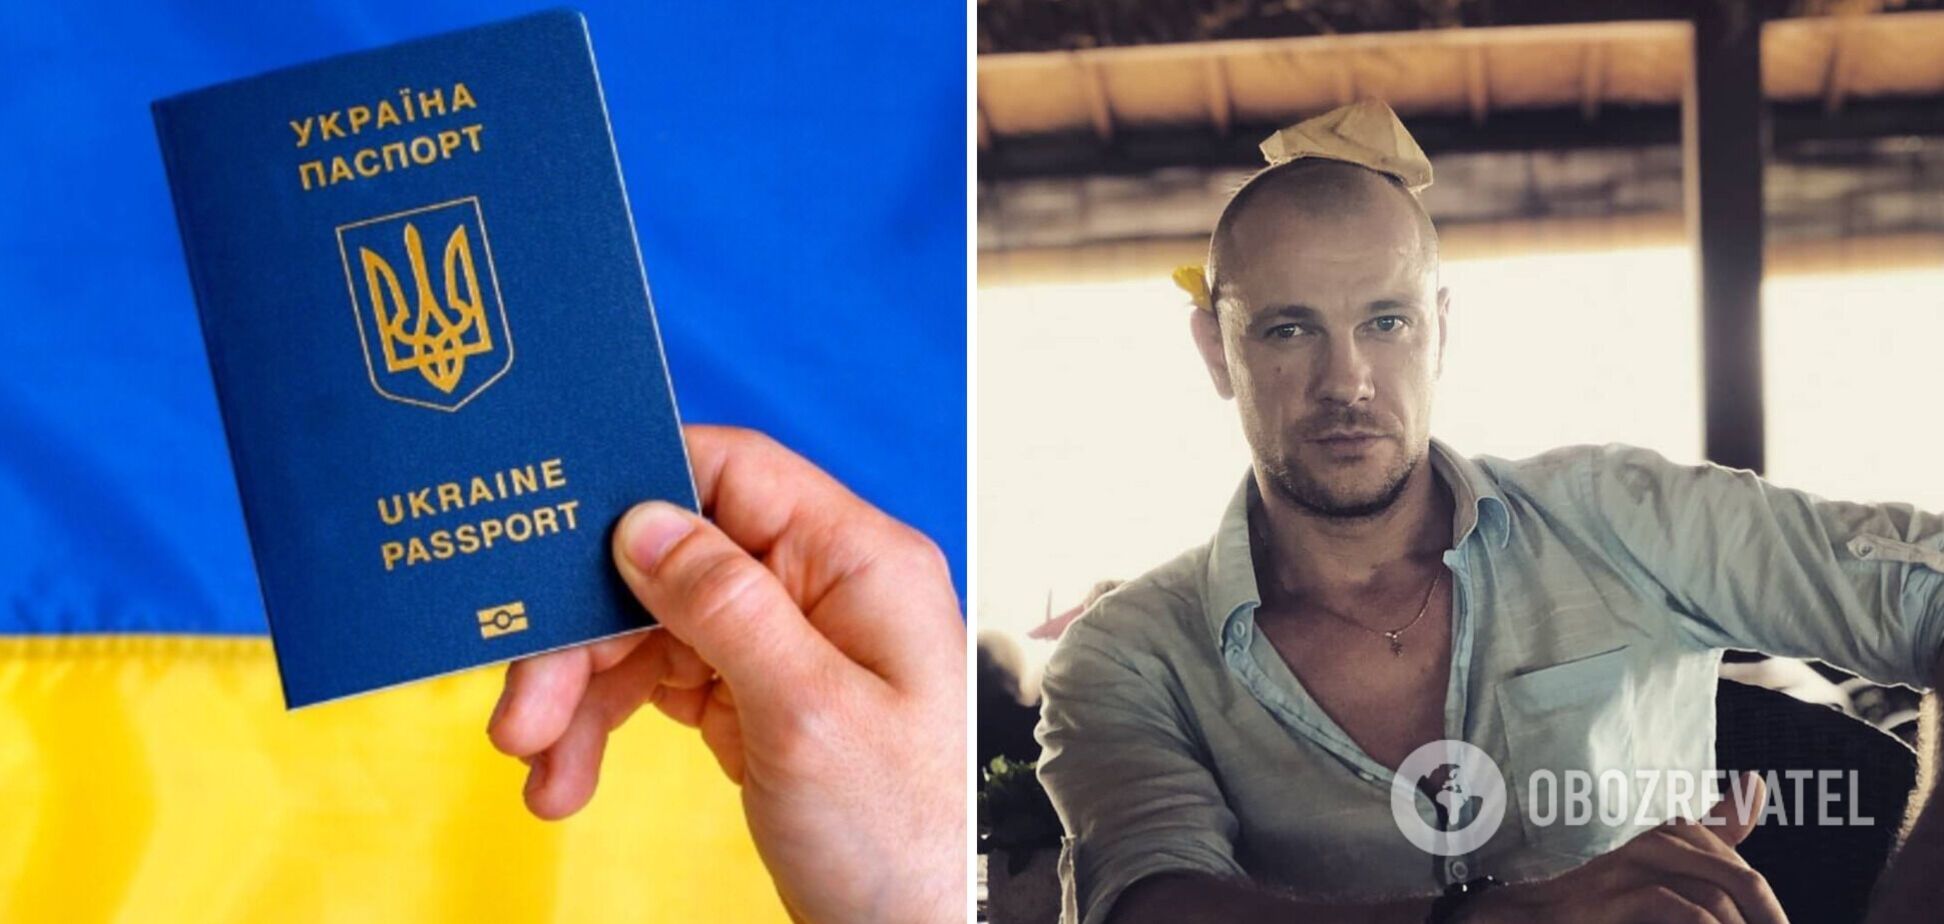 Актор із Білорусі Павло Вишняков зізнався, що хотів би отримати українське громадянство: постійно виникають проблеми, затримання